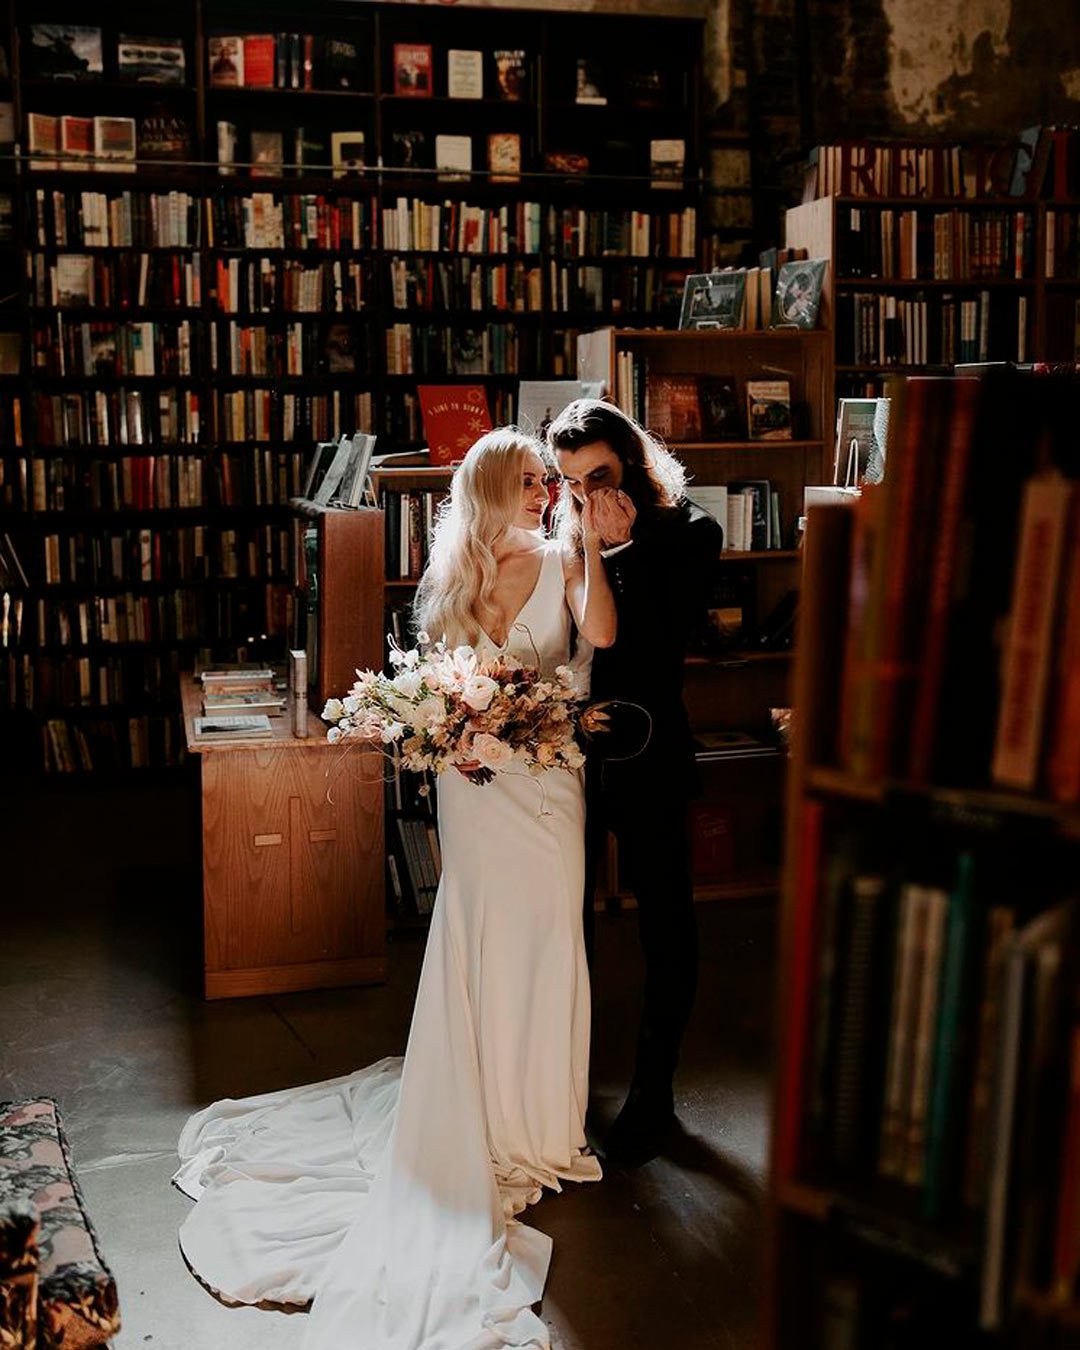 wedding venue ideas bride groom library